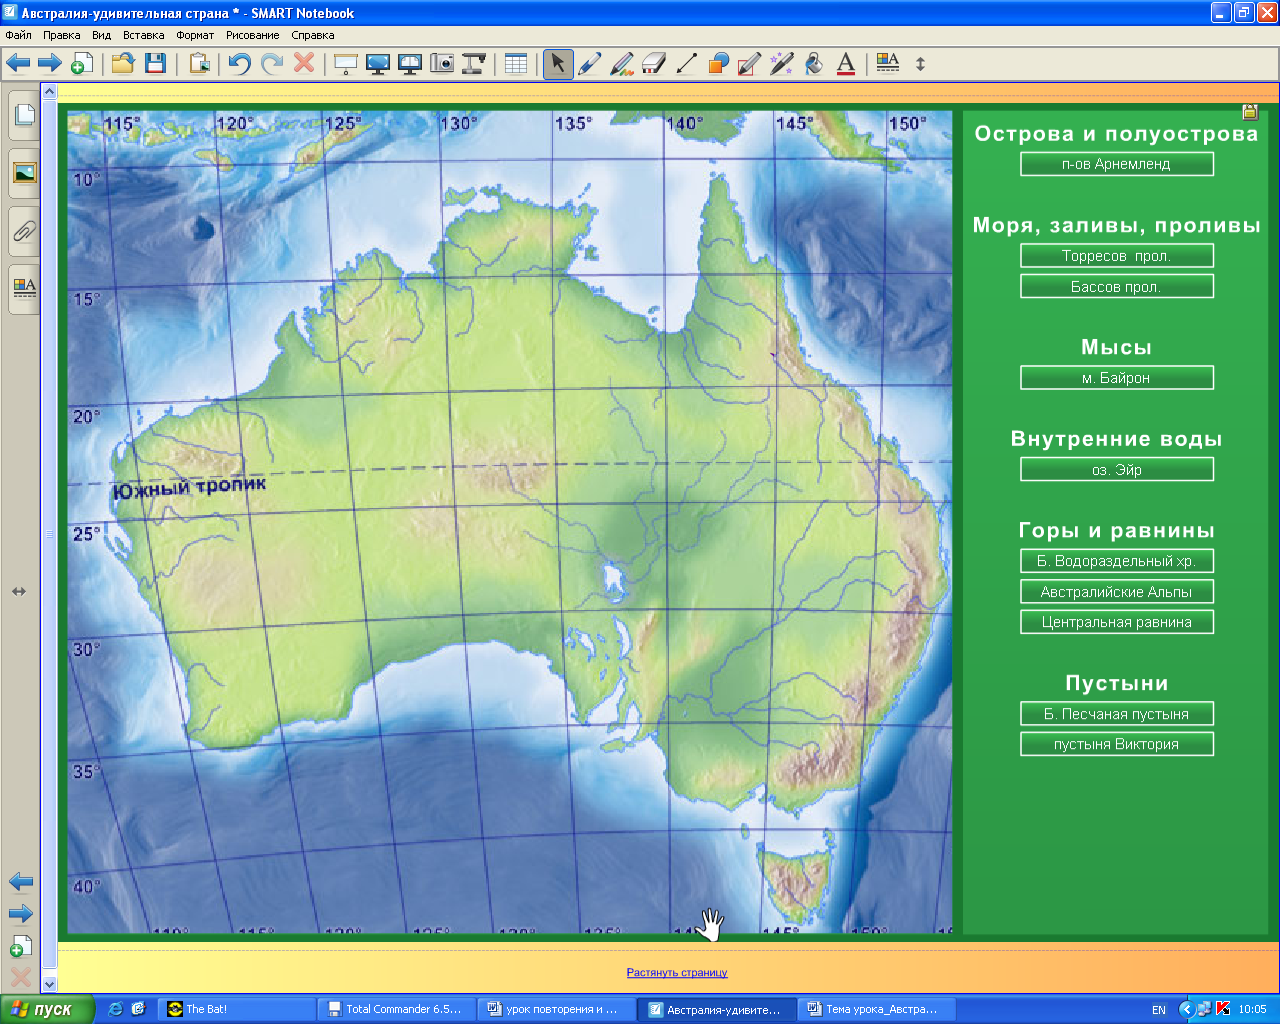 Урок географии в 7 классе с использованием интерактивной доски